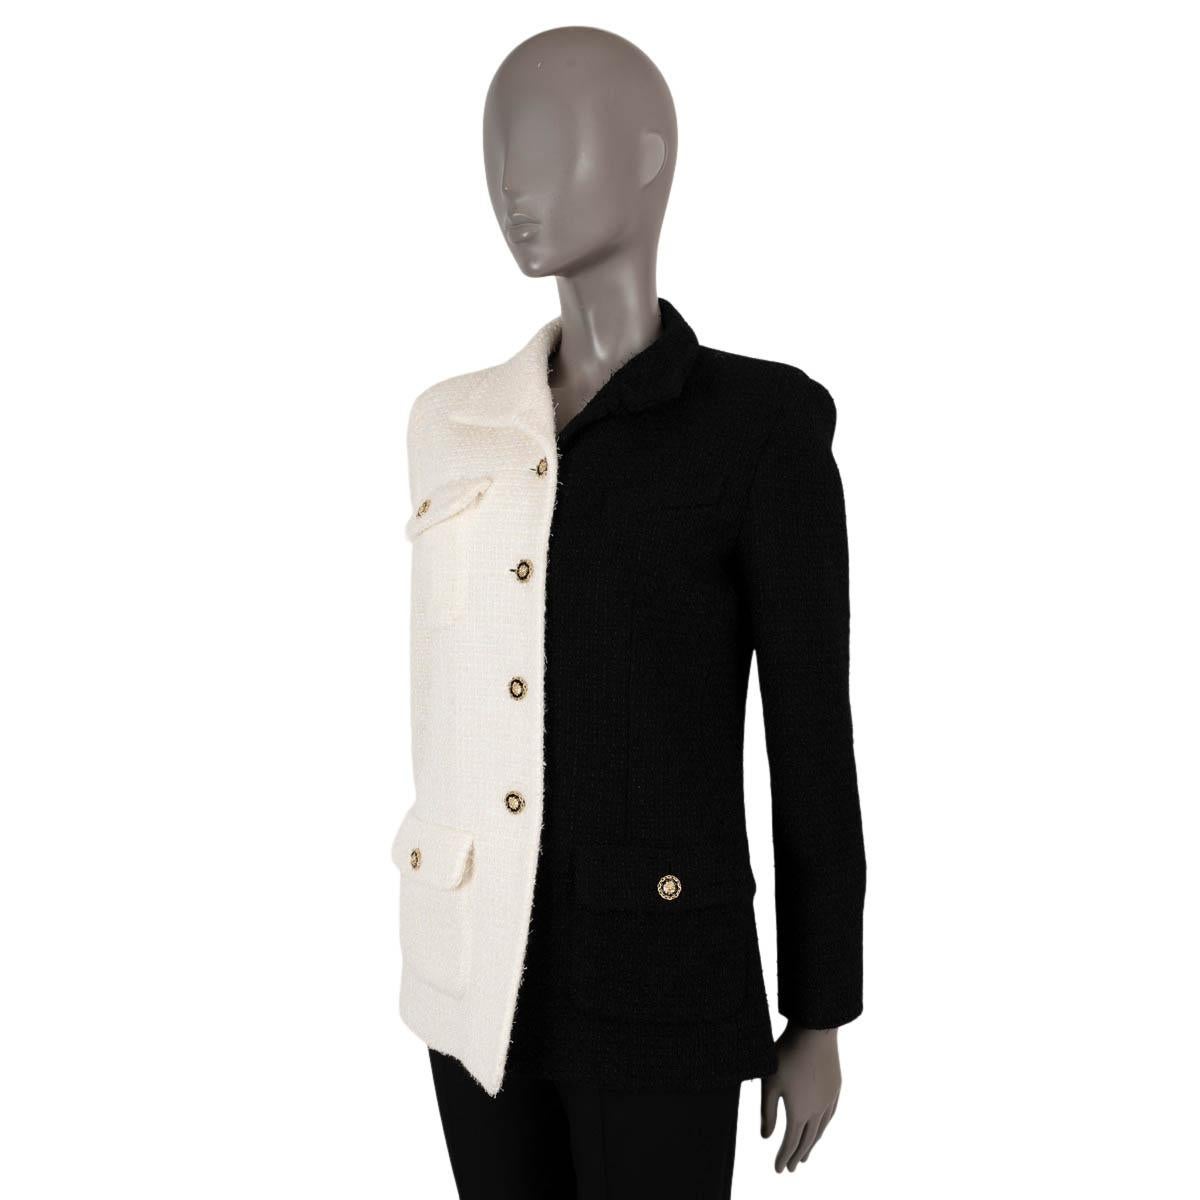 Veste en tweed bicolore 100% authentique Chanel en laine (62%) et polyamide (38%) blanc et noir. Cette veste emblématique présente trois poches à rabat boutonnées et un col asymétrique. Il se ferme à l'aide de boutons à tête de lion dorés et est